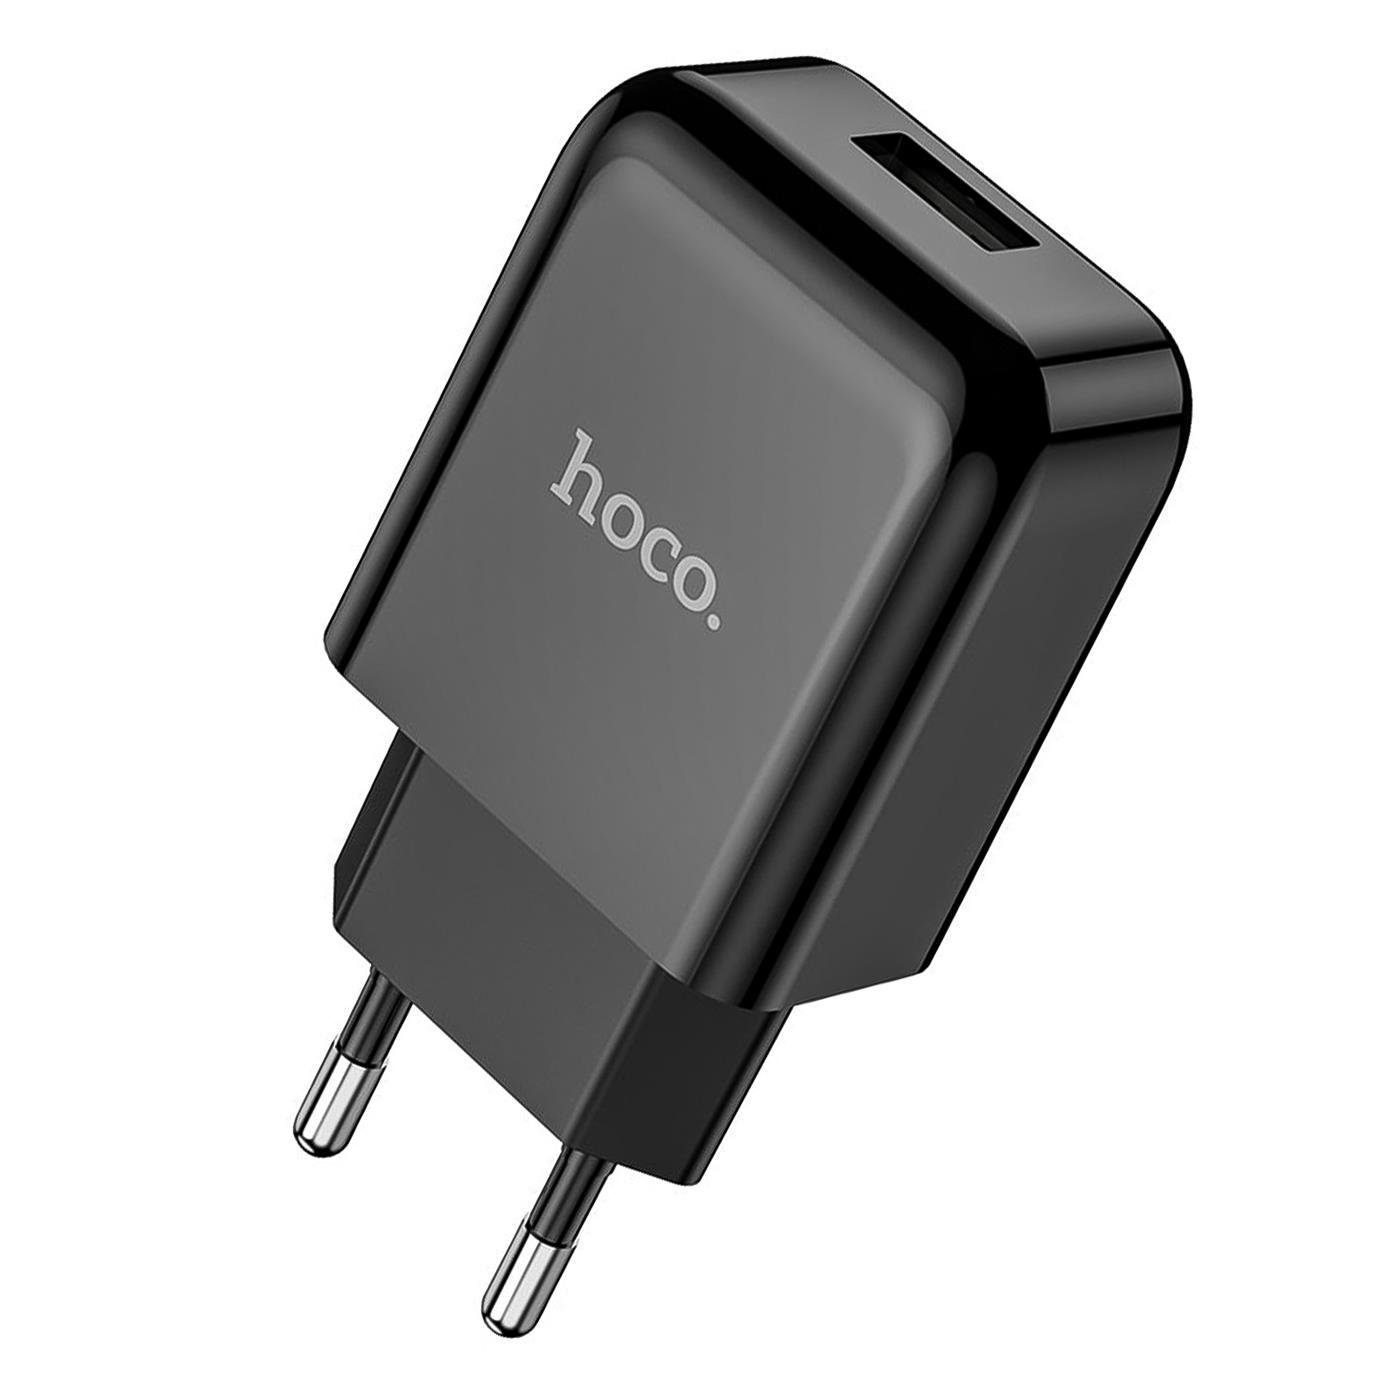 HOCO 10W USB Typ A Smartphone-Ladegerät (2100 mA, EU Netz Lade Stecker Ladegerät Charger Single USB Charge)